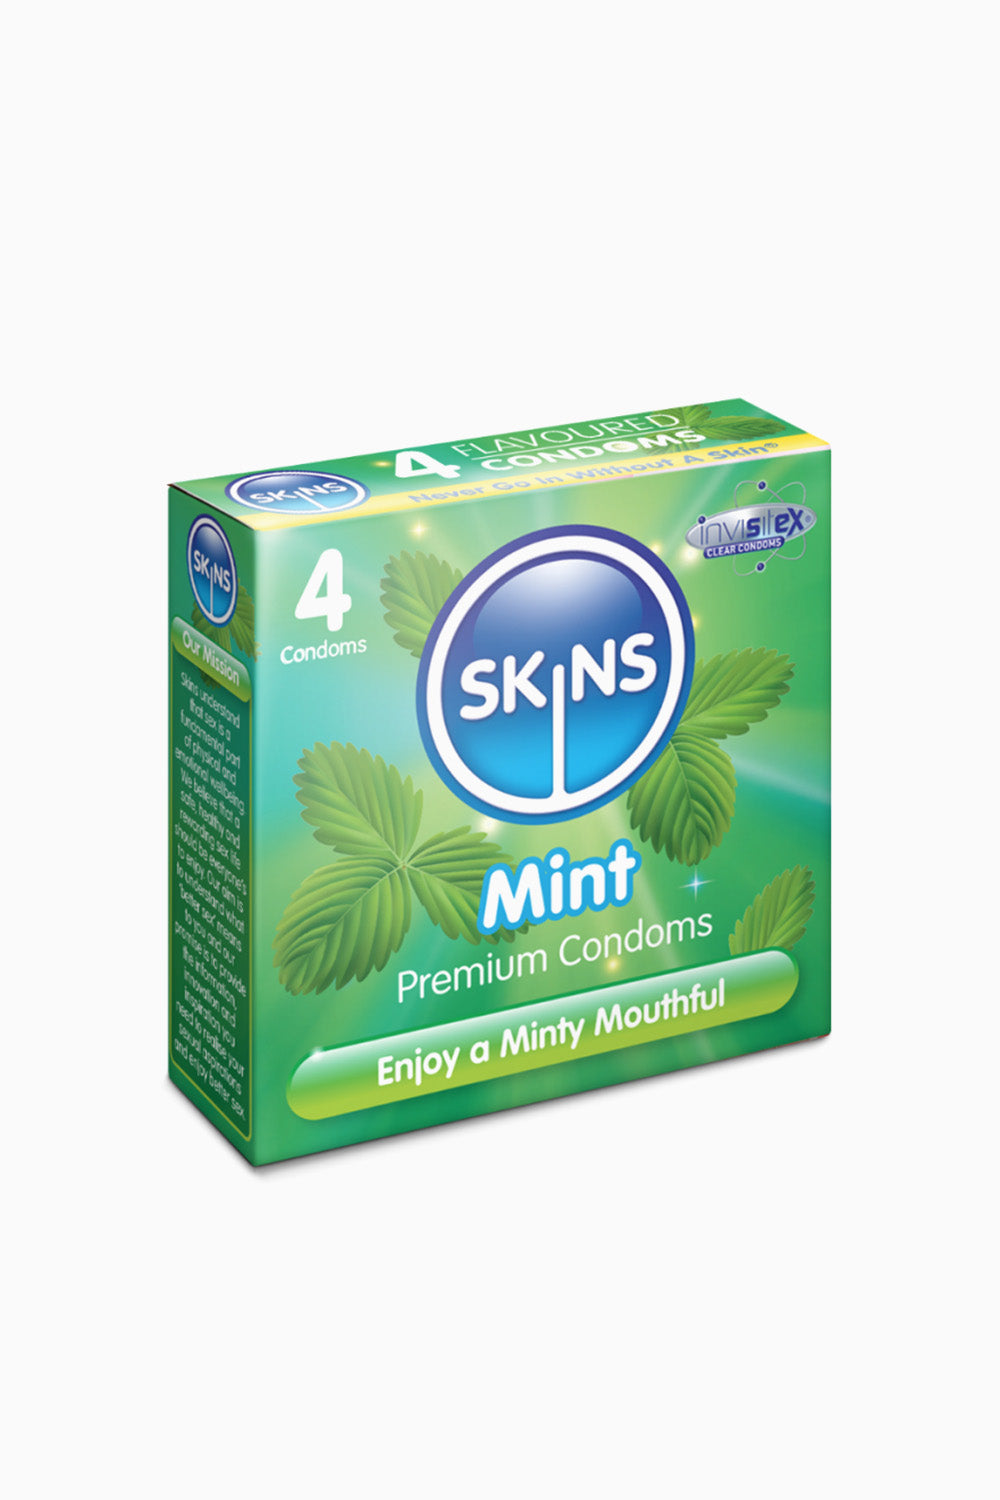 Skins Mint Condoms